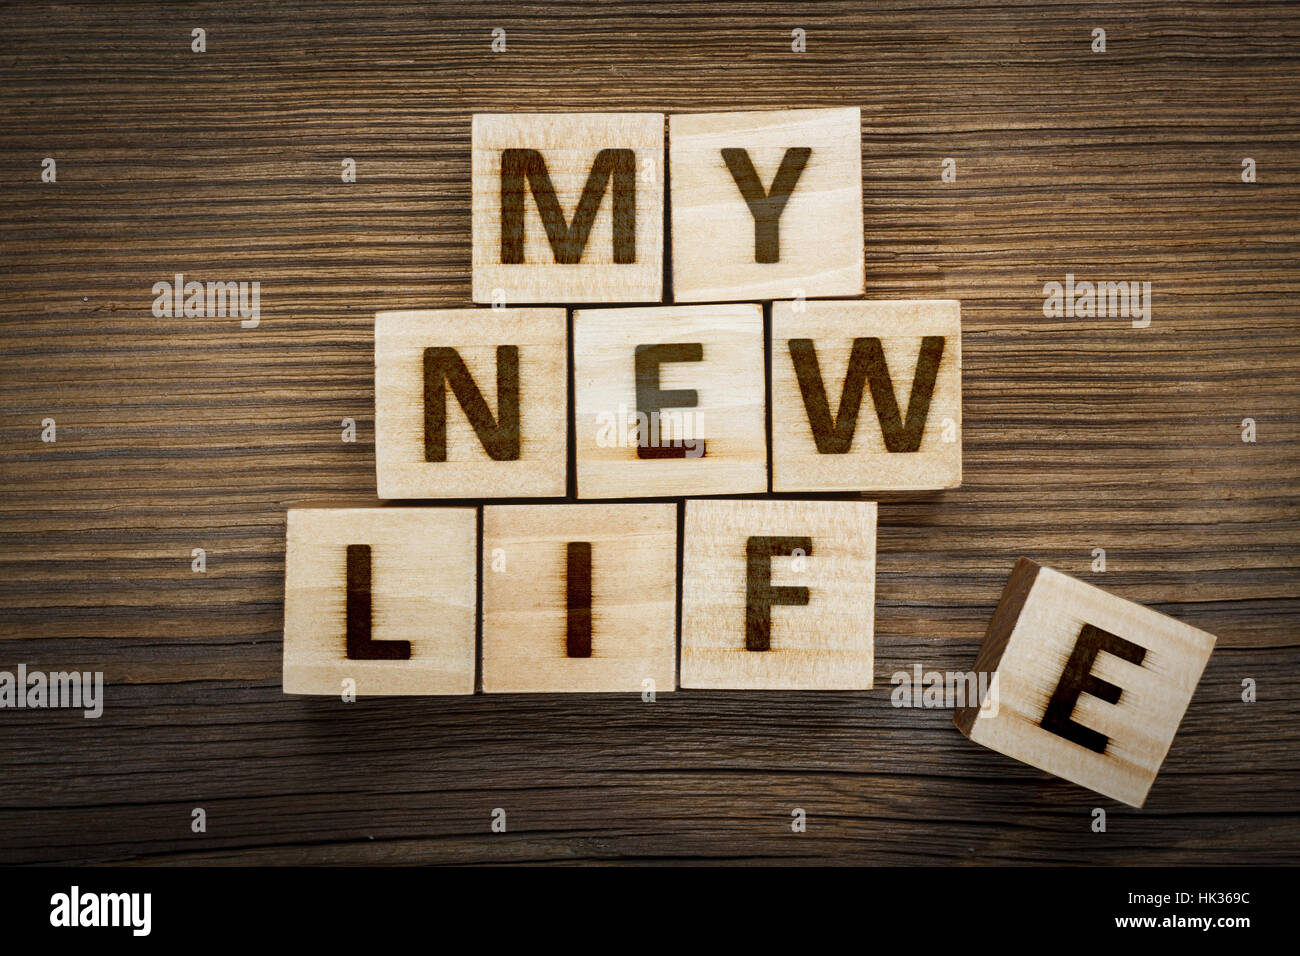 'My nuova vita' iscrizione sul fatto da blocchi di legno Foto Stock